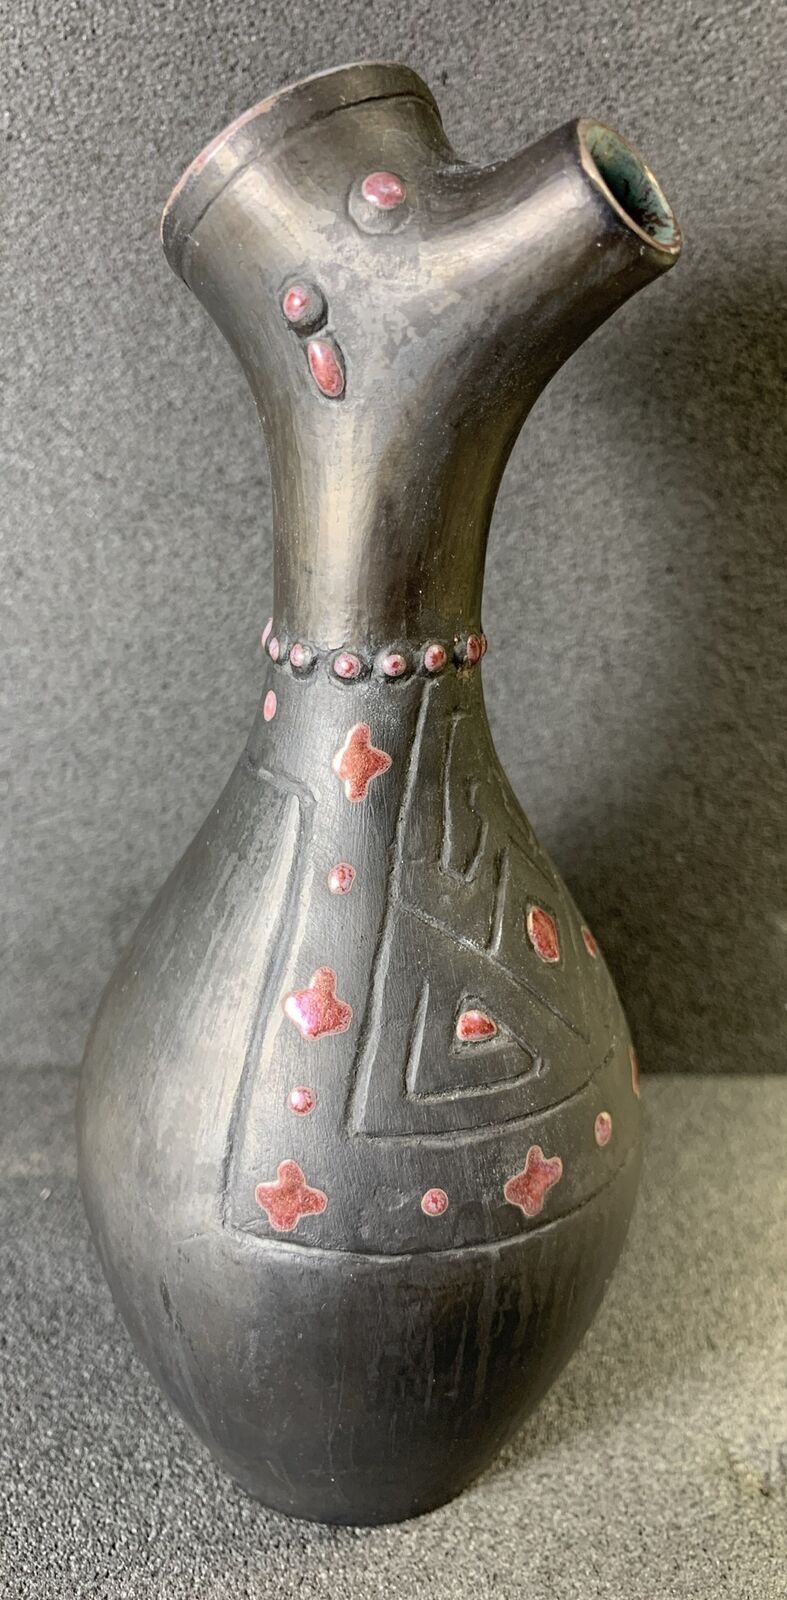 Zoomorphic Pottery Pitcher / Vase, Penguin Shape, Vintage, Unique, European